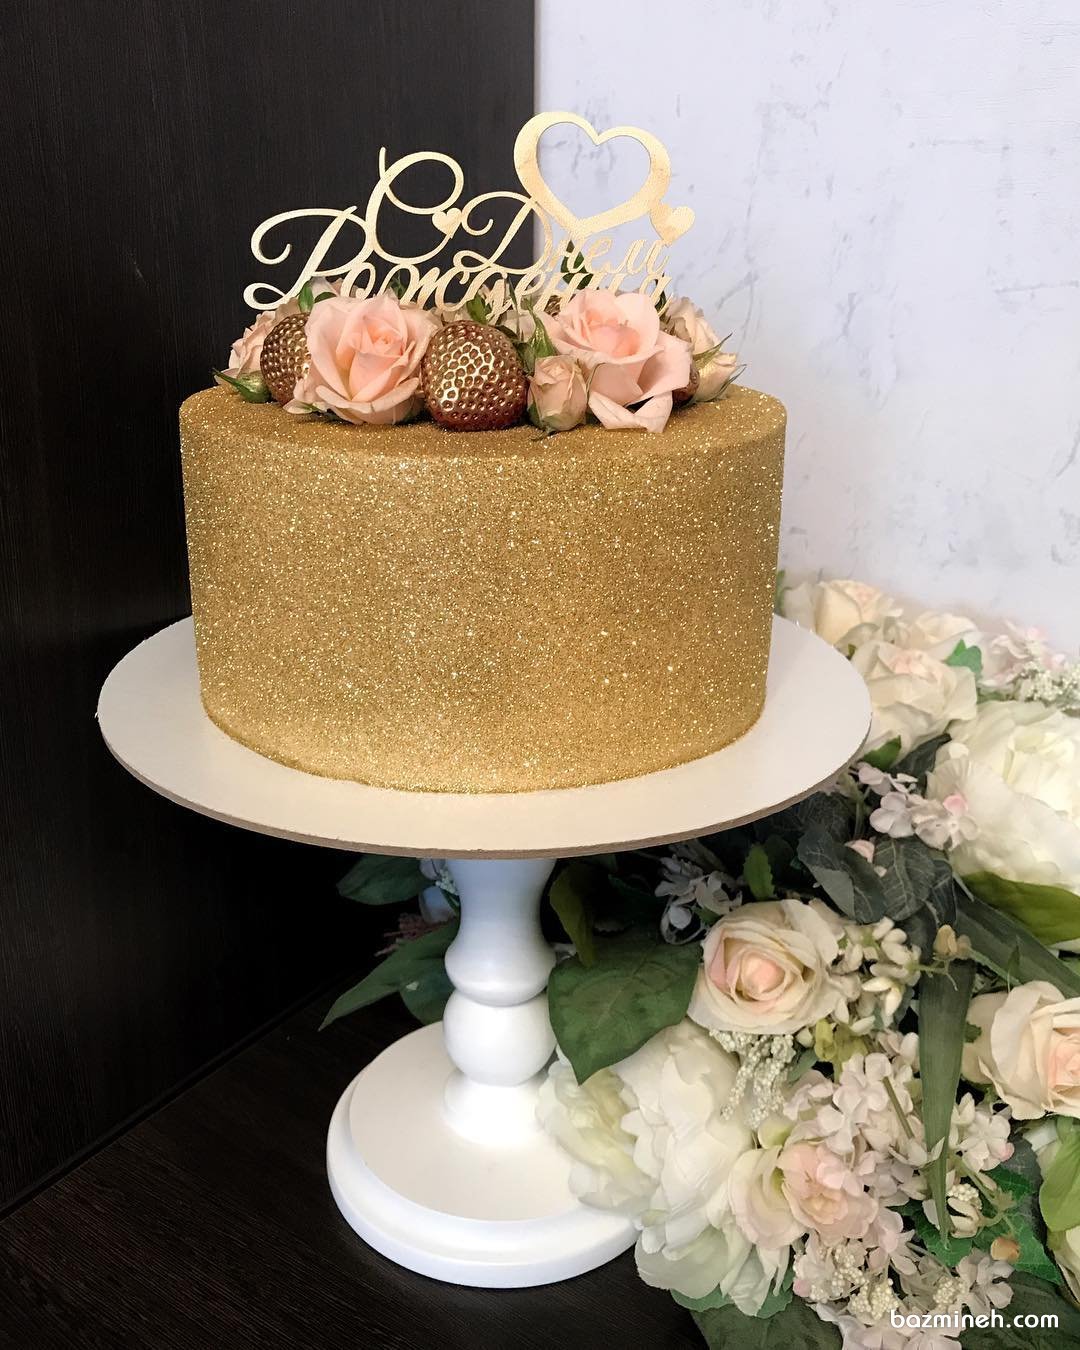 مینی کیک زیبای جشن تولد بزرگسال یا جشن سالگرد ازدواج با روکش شاینی طلایی تزیین شده با گل های رز طبیعی و توت فرنگی 